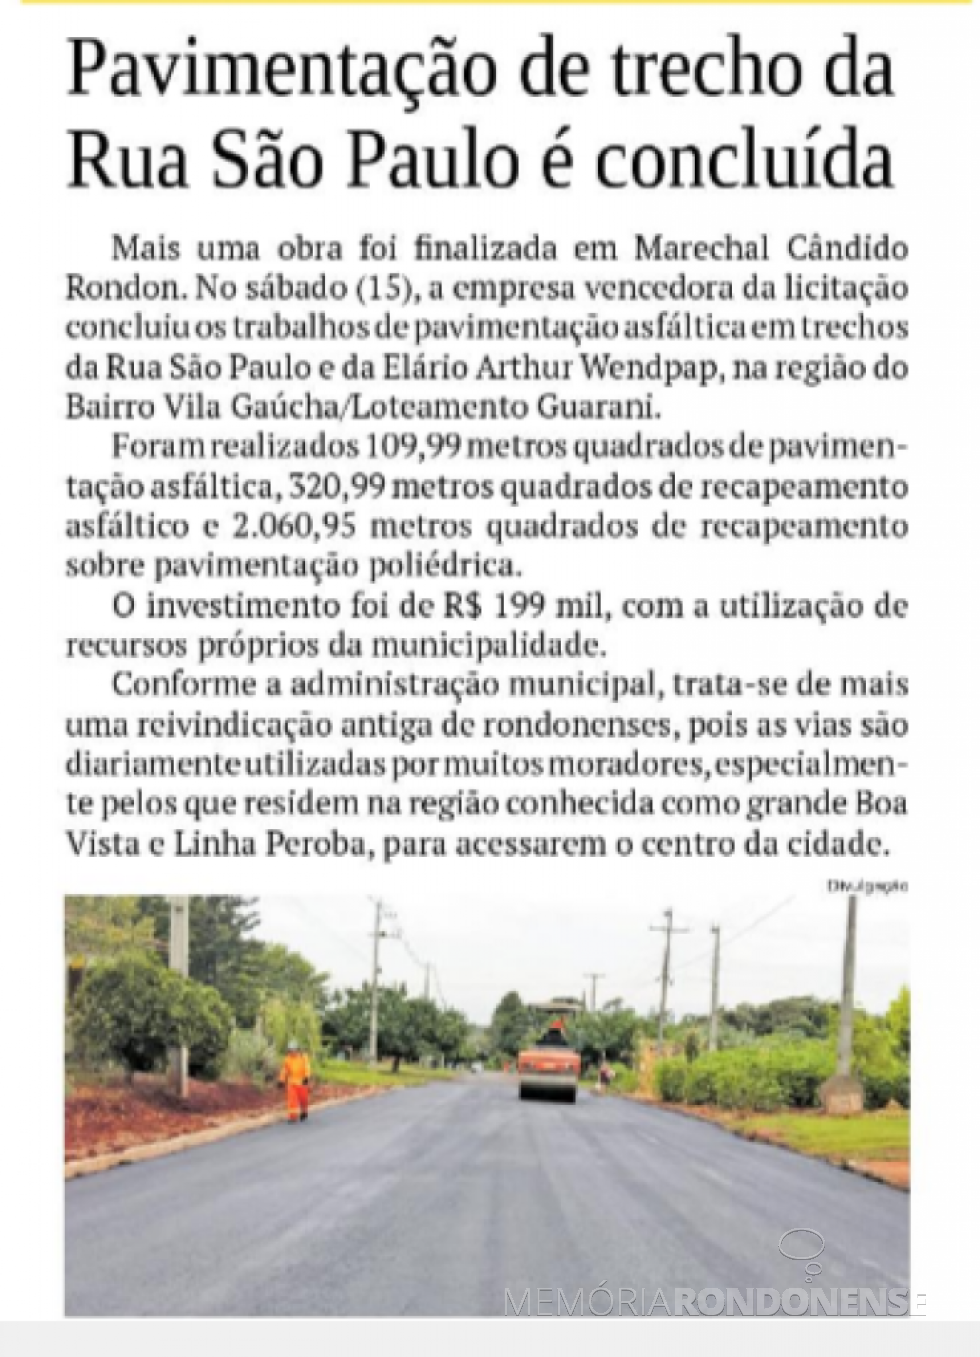 || Destaque do jornal O Presente referente a pavimentação asfáltica de trecho da Rua São Paulo e da  Elário Arthur Wendpap, em fevereiro de 2020.
Imagem: Acervo O Presente - FOTO 17 - 